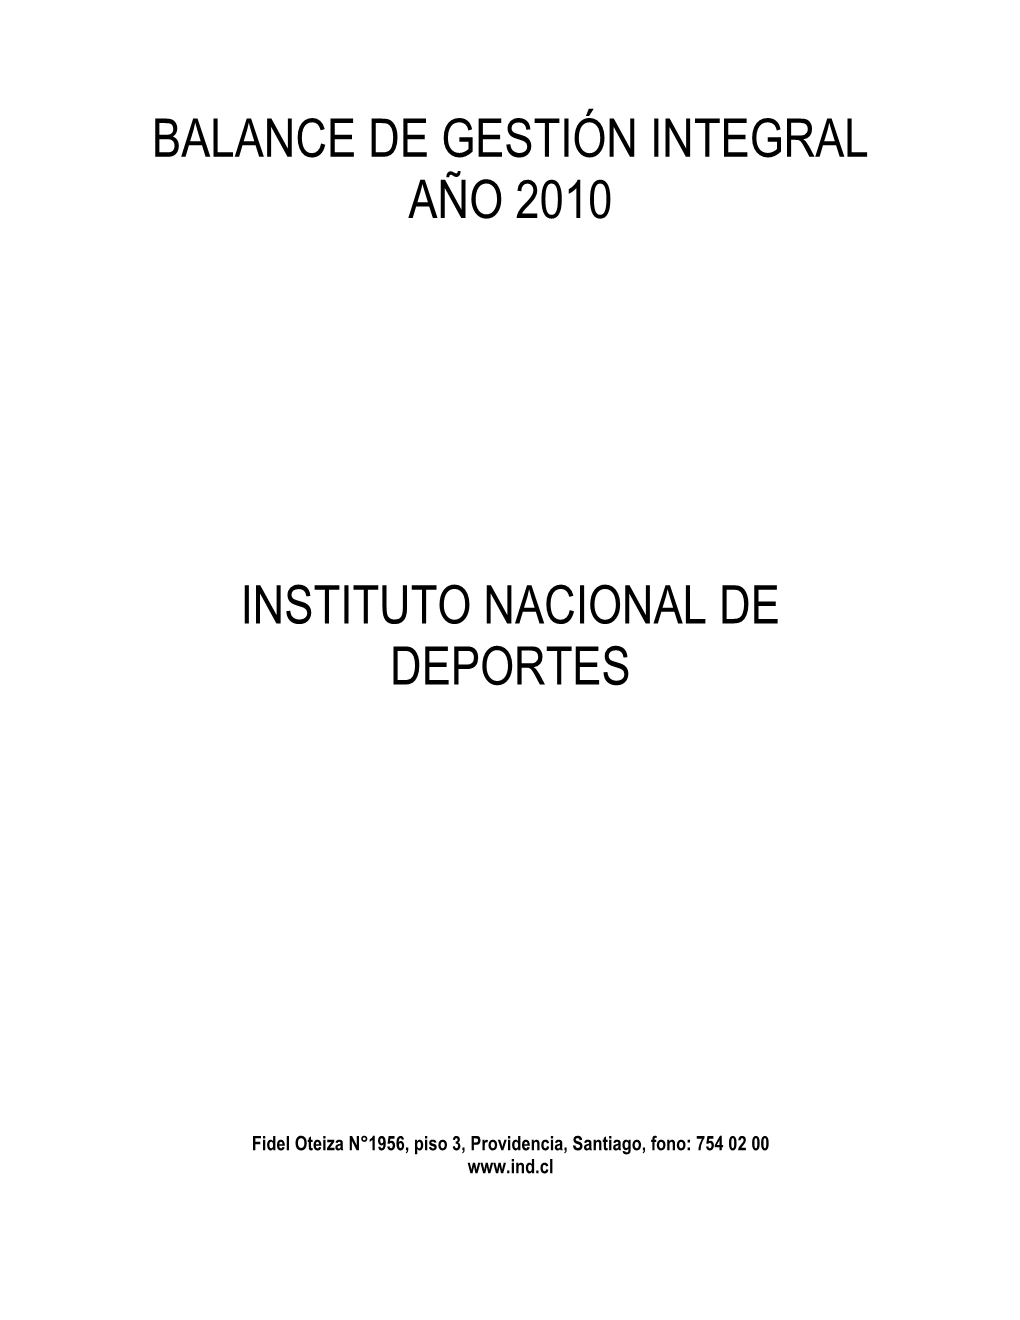 Balance De Gestión Integral Año 2010 Instituto Nacional